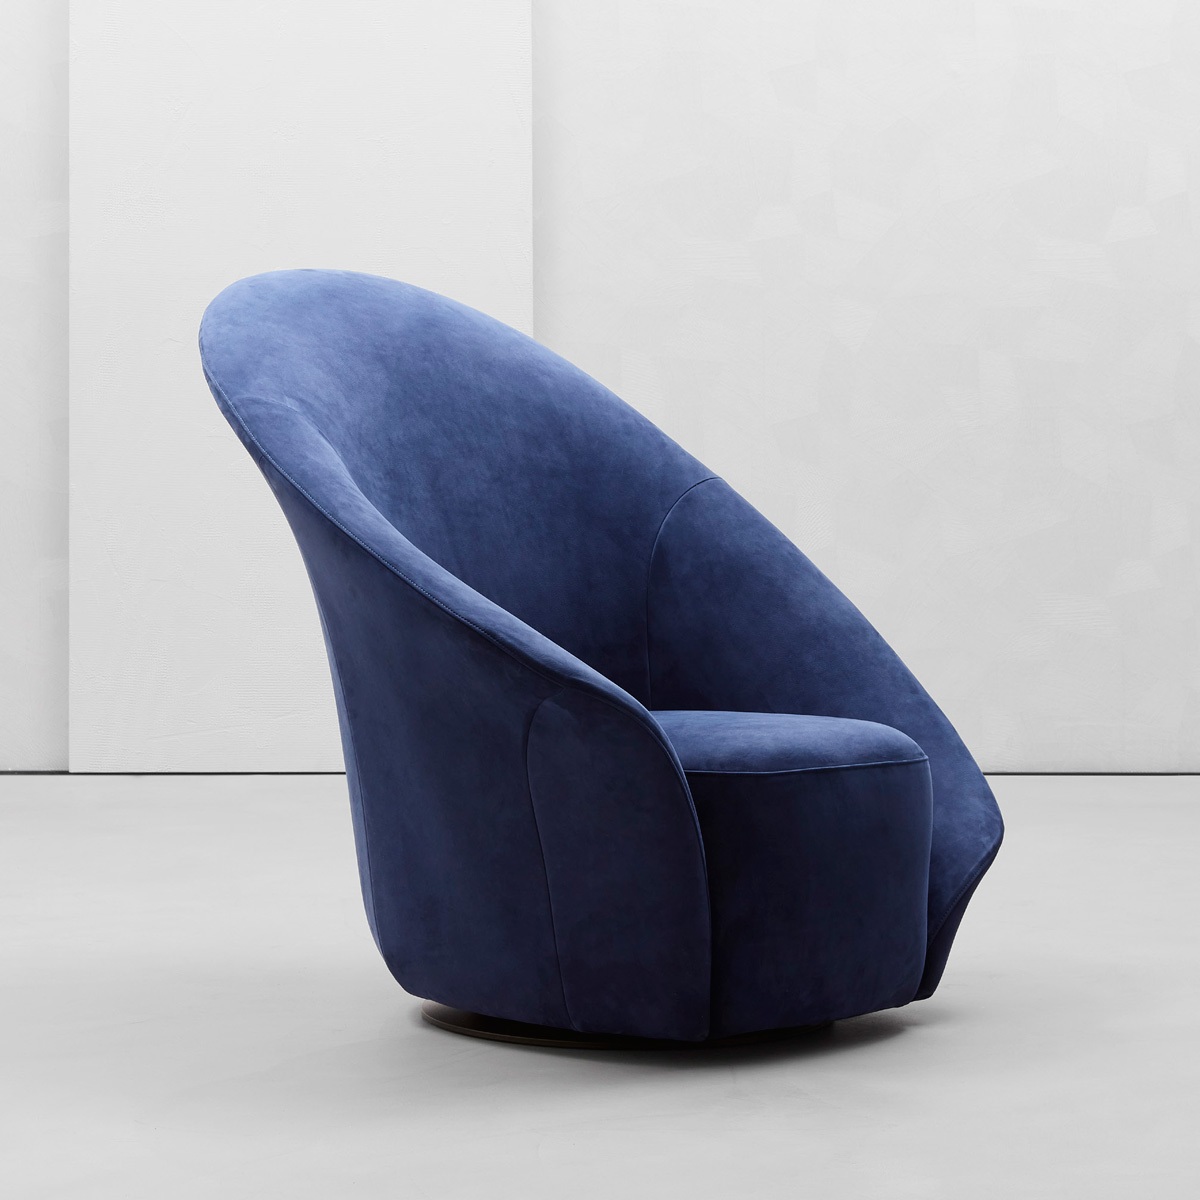 bentuk armchair elegan ini menyerupai bunga lili / flou / laflo 3